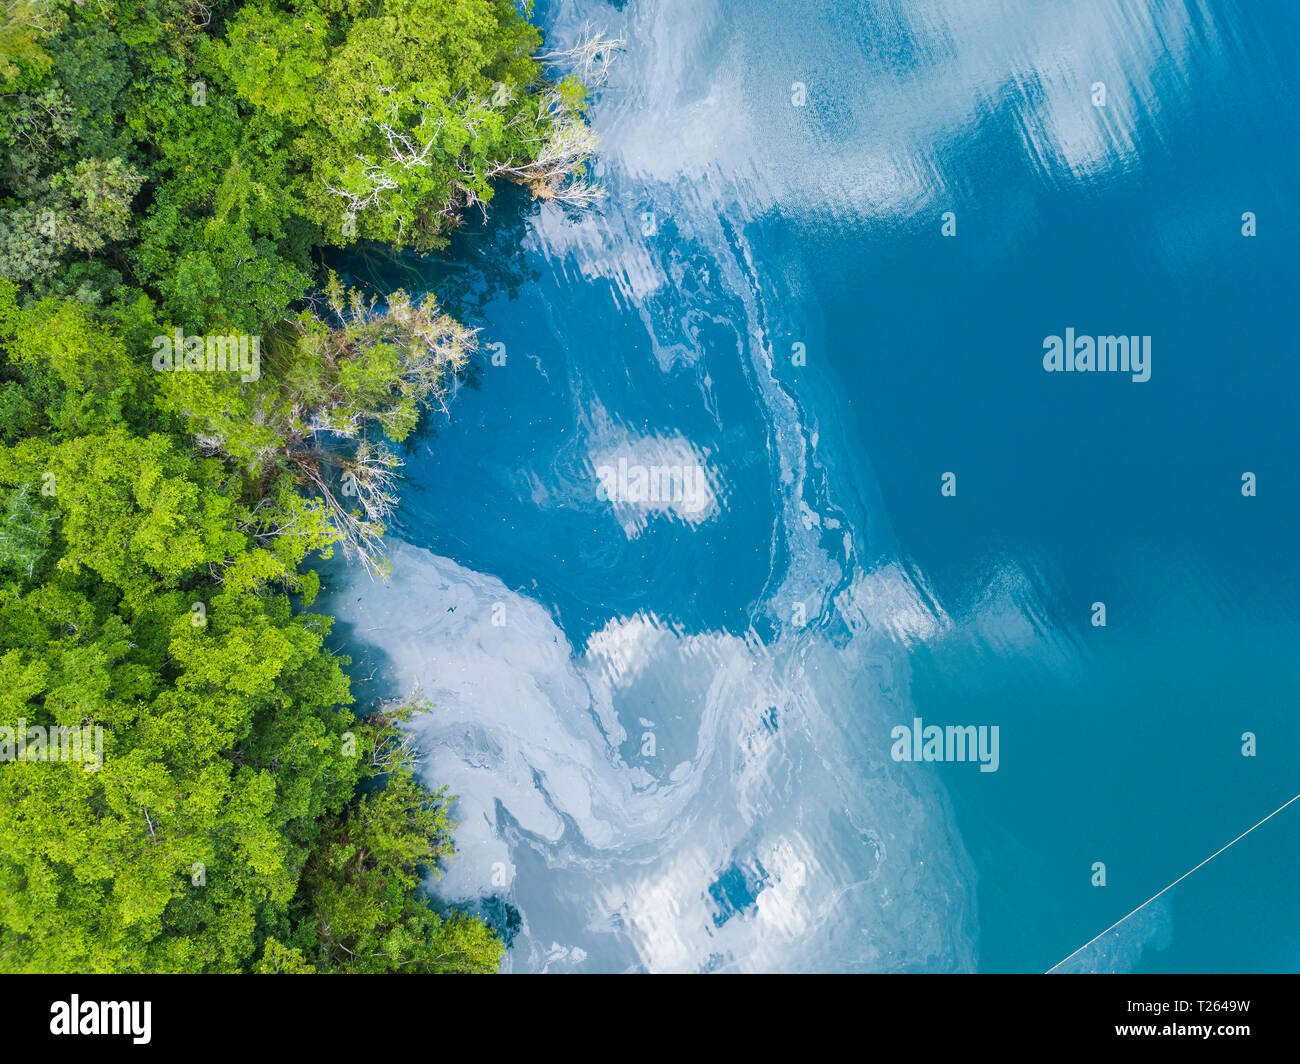 Mexiko, Yucatan, Quintana Roo, lagoon of Bacalar, green trees and lake, drone image Stock Photo